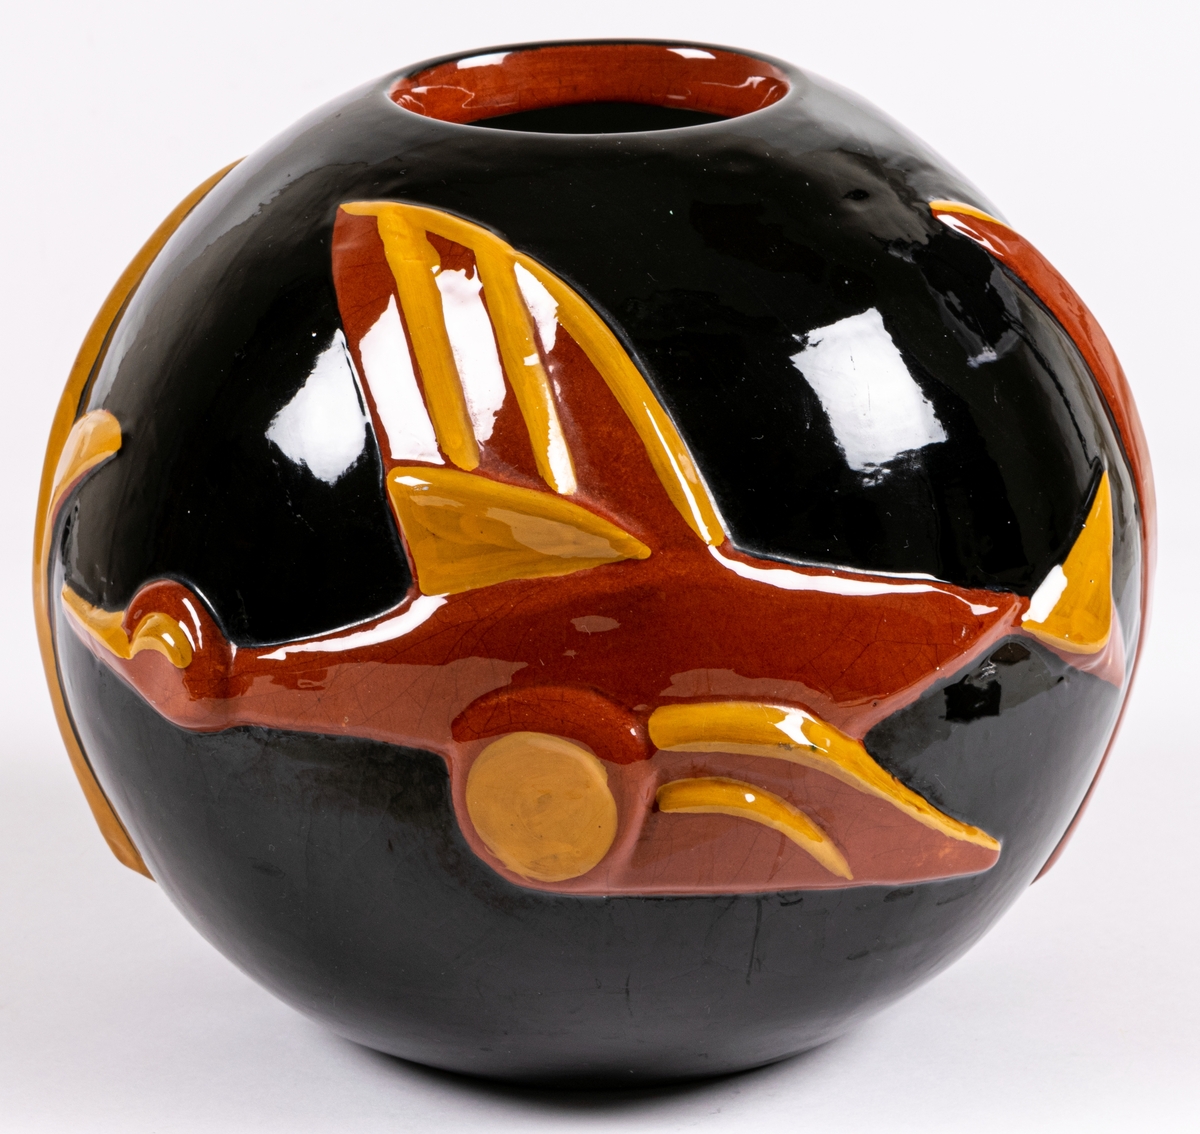 Vas modell 4298, formgiven av Maggie Wibom vid Bo Fajans, glaserad lergods med reliefmotiv i form av en flygandel fågel (gås) i rött och gult mot svart botten. Glasyr LW.